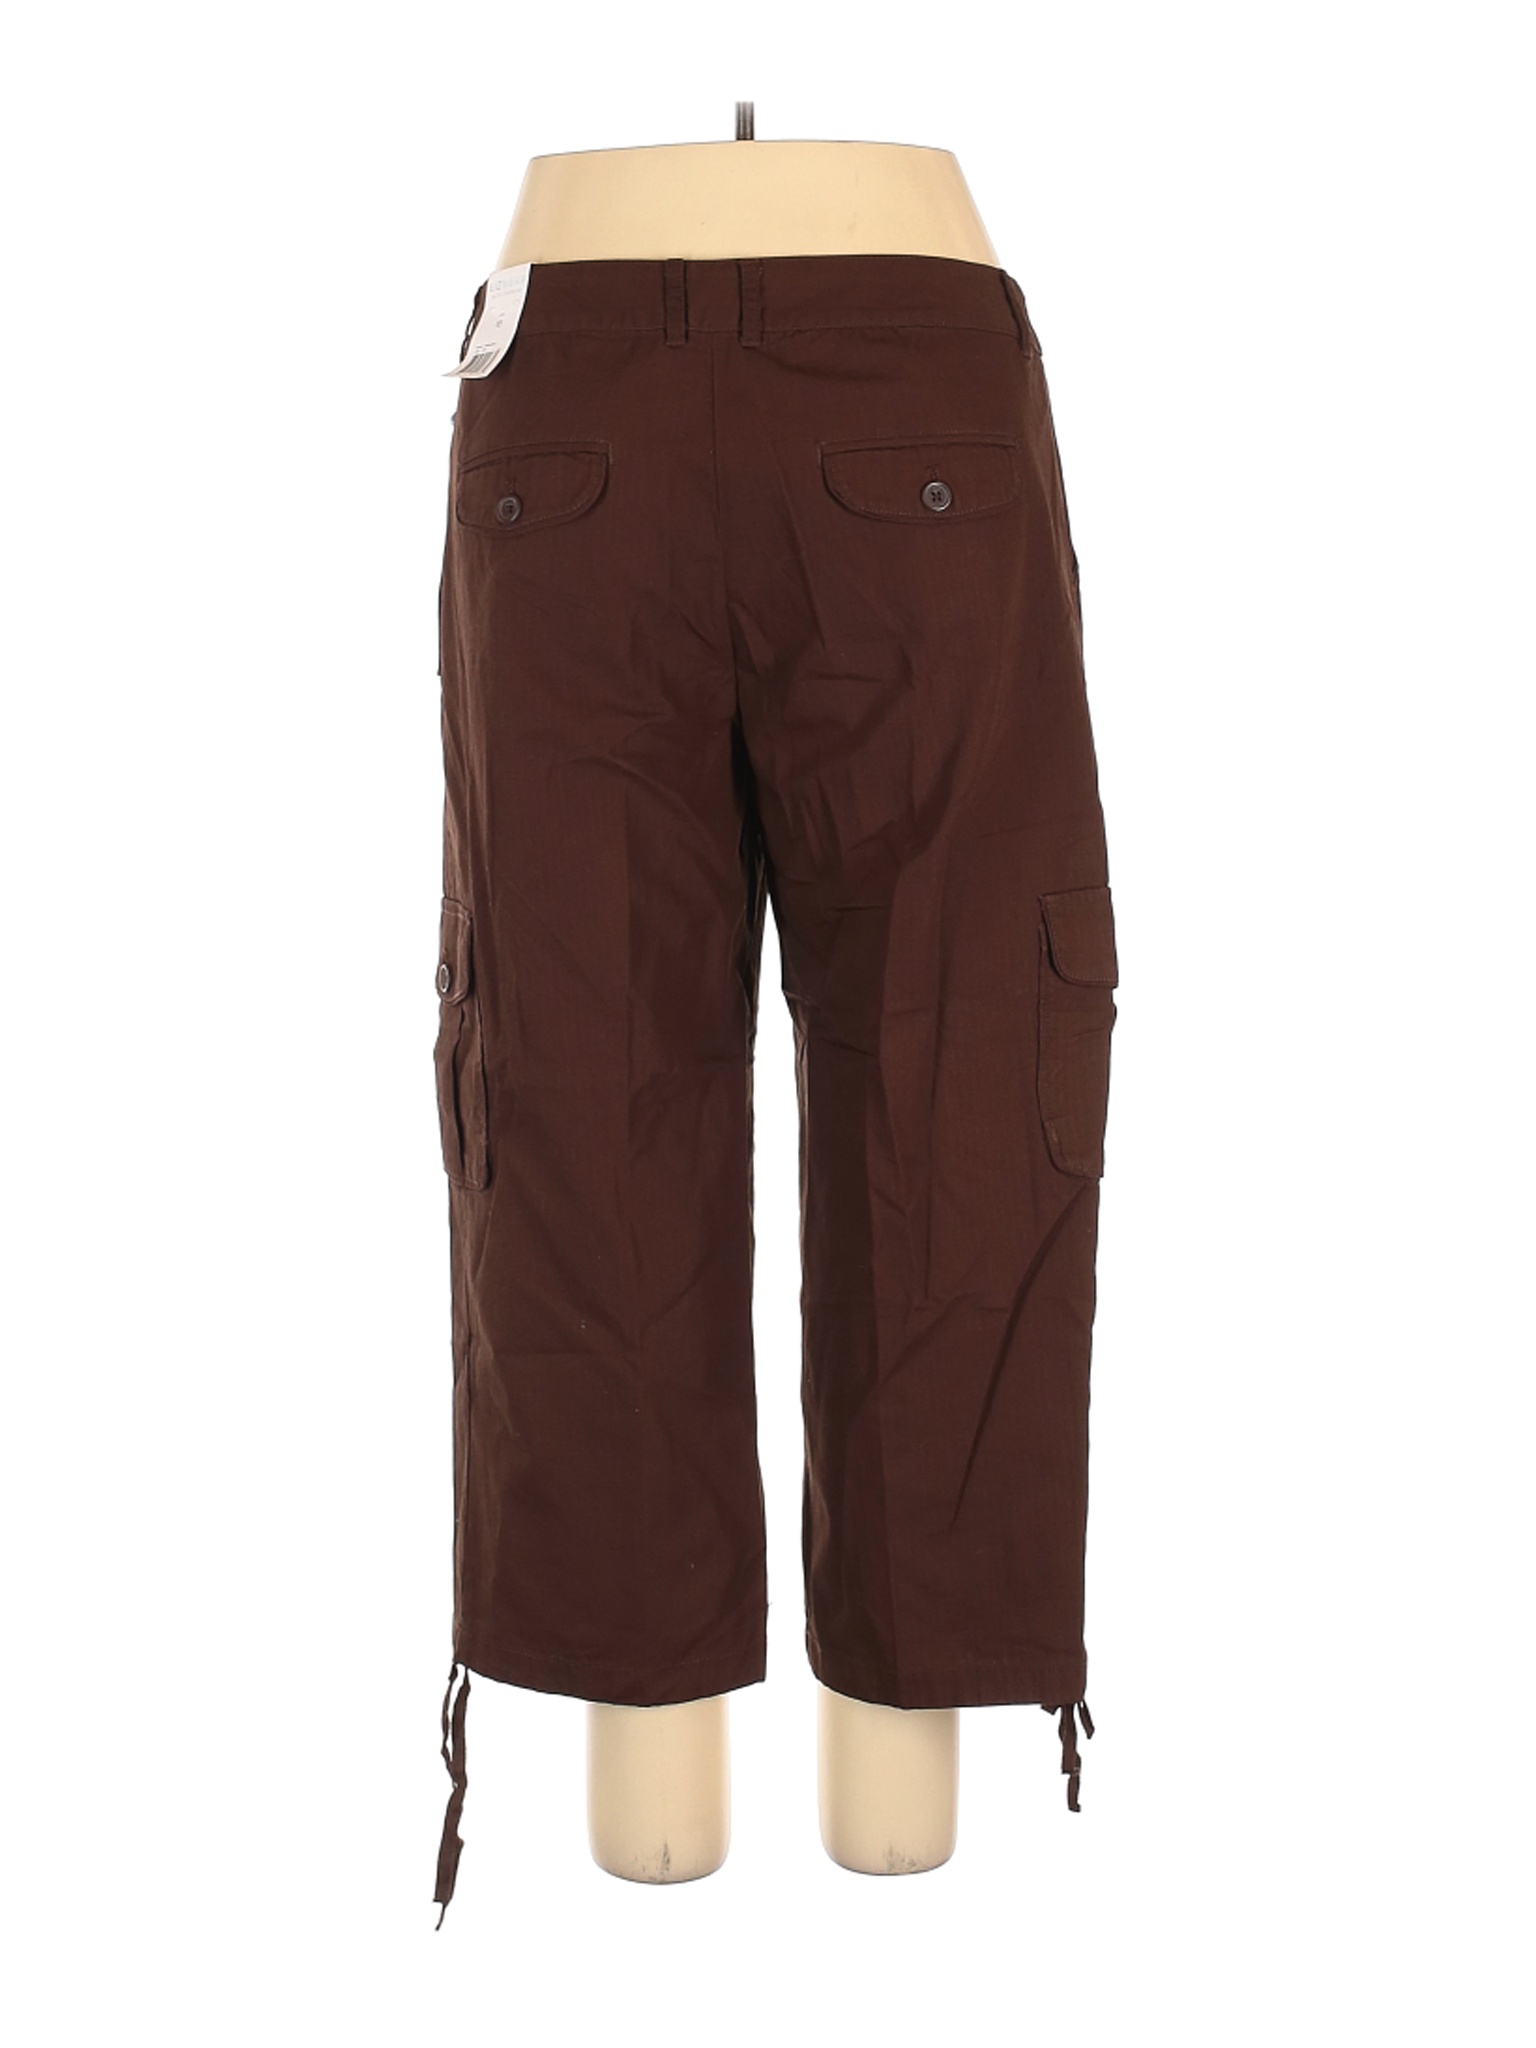 NWT Lizwear by Liz Claiborne Women Brown Cargo Pants 16 | eBay